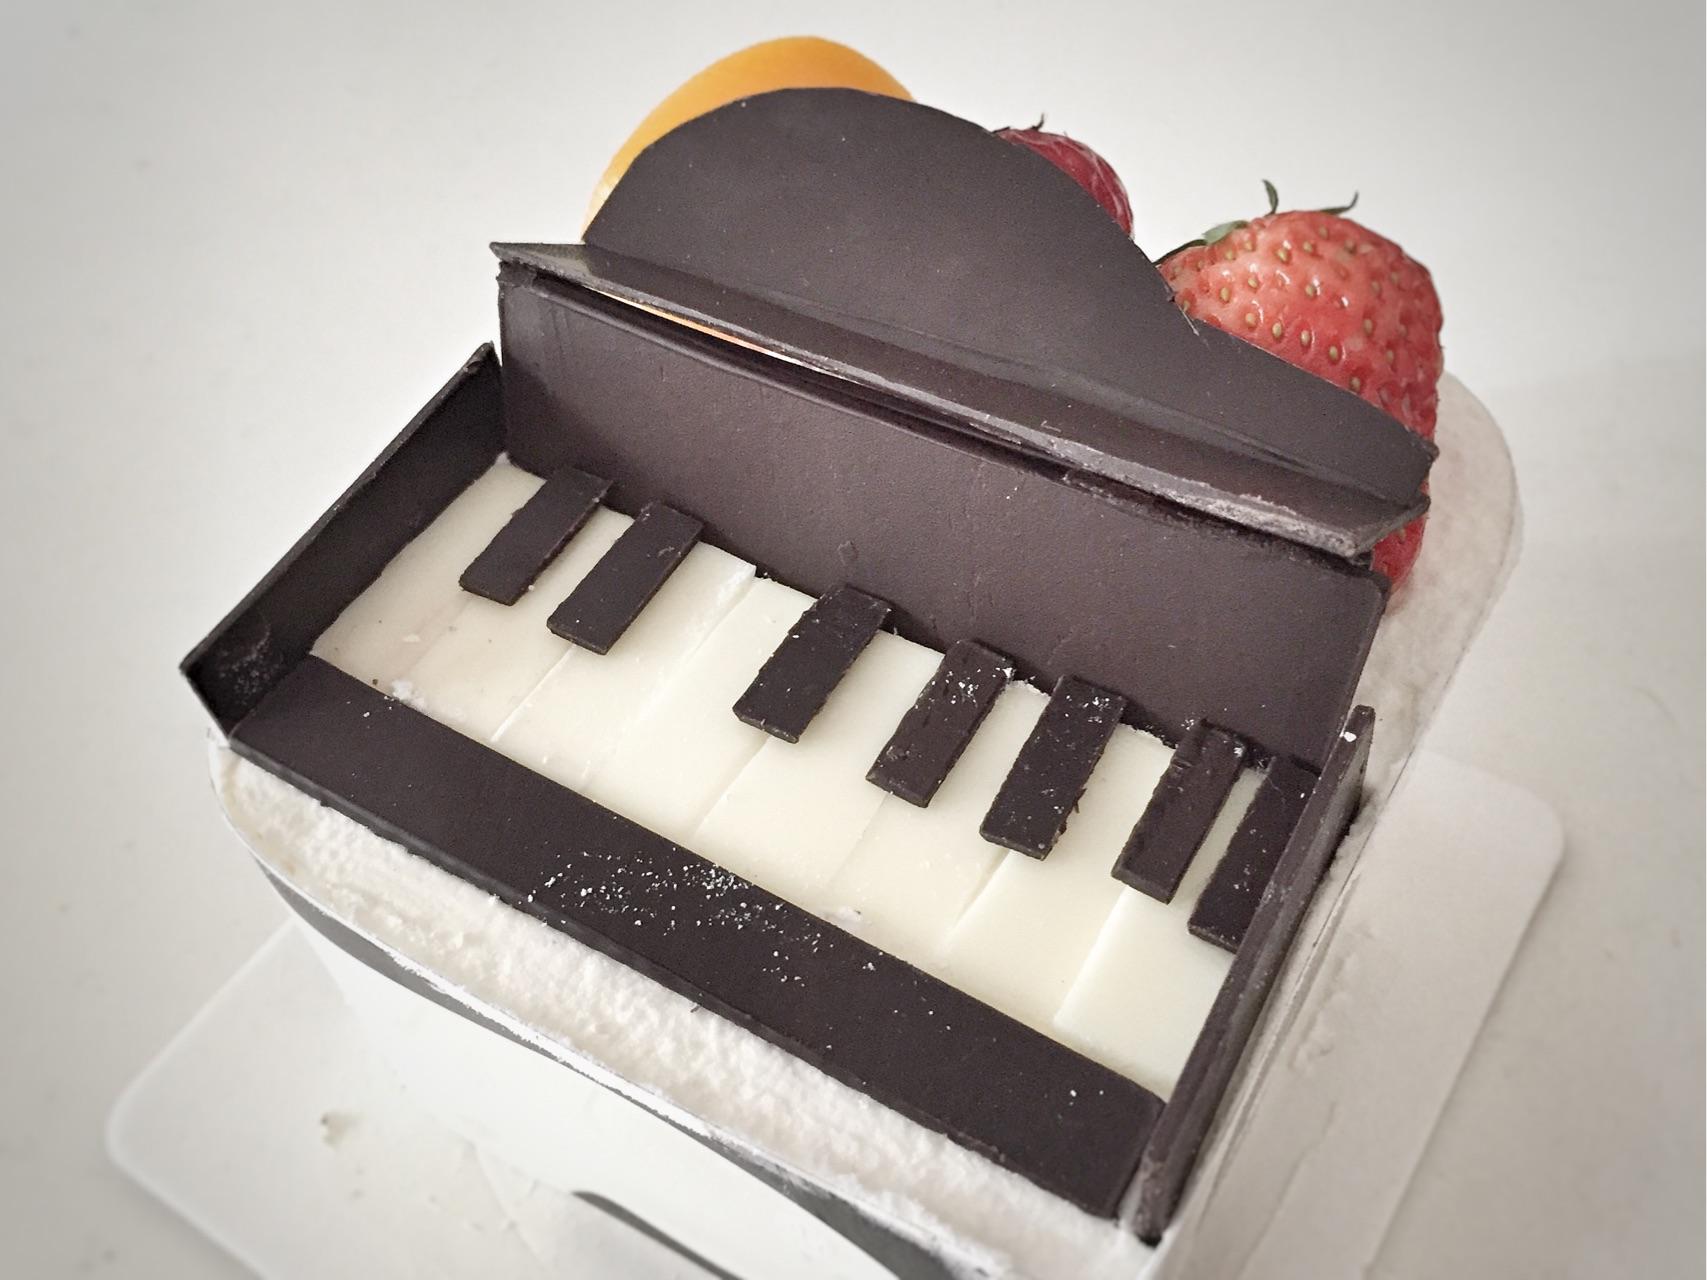 在钢琴和大提琴形状的蛋糕 库存照片. 图片 包括有 幸福, 设计, 隐喻, 食物, 喜悦, 蛋糕, 大提琴 - 64524026